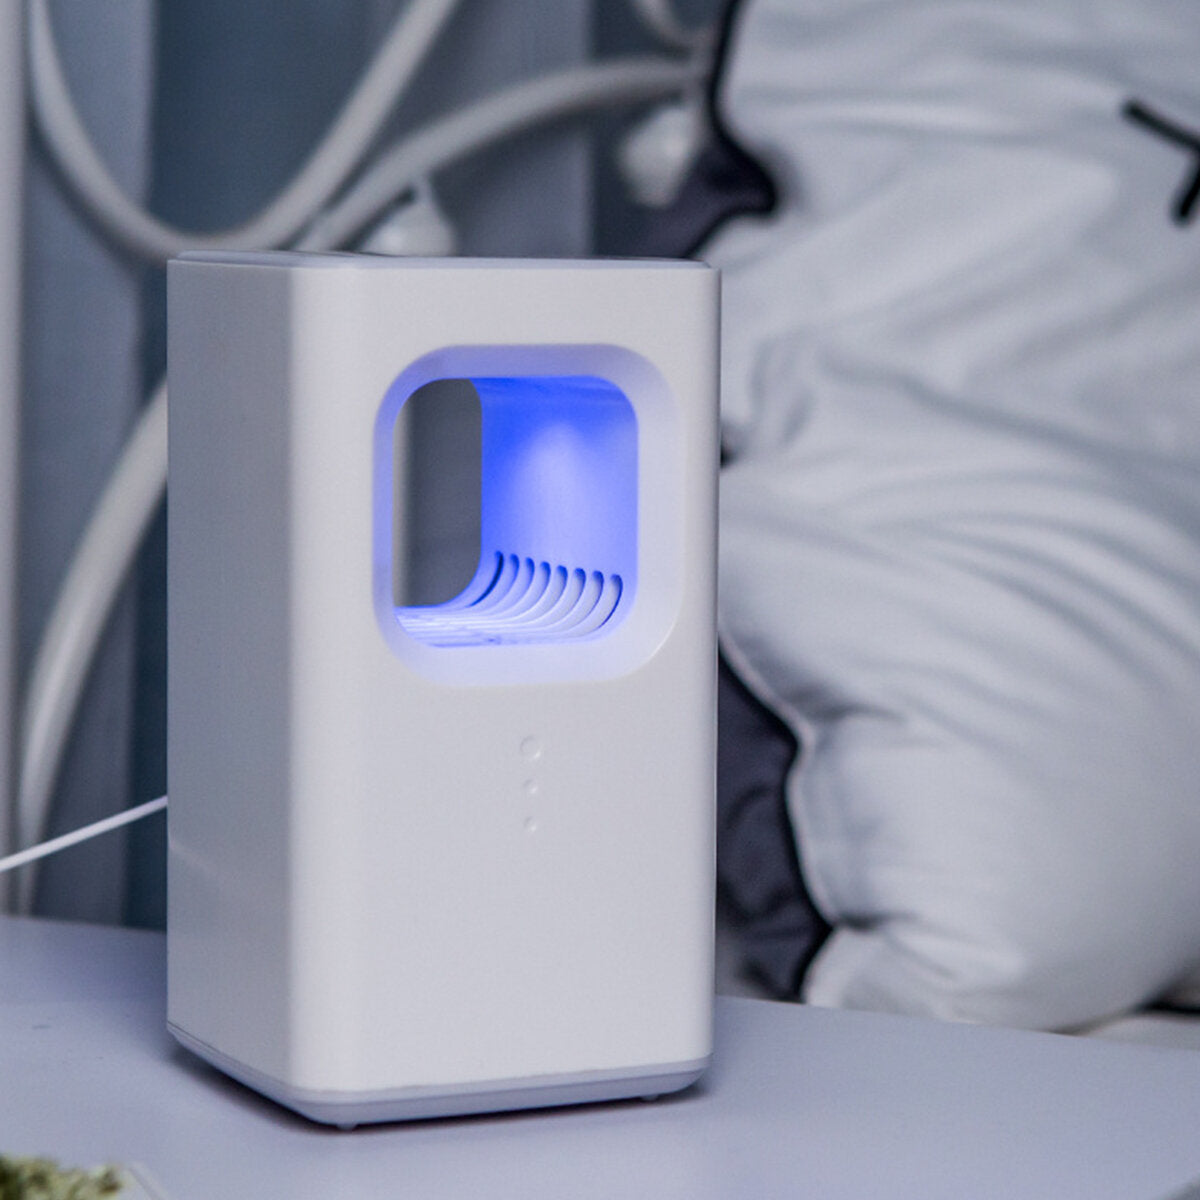 mosquito killer lamp usb geluidsarm insectenwerend middel muggenverdrijver voor home hotel office